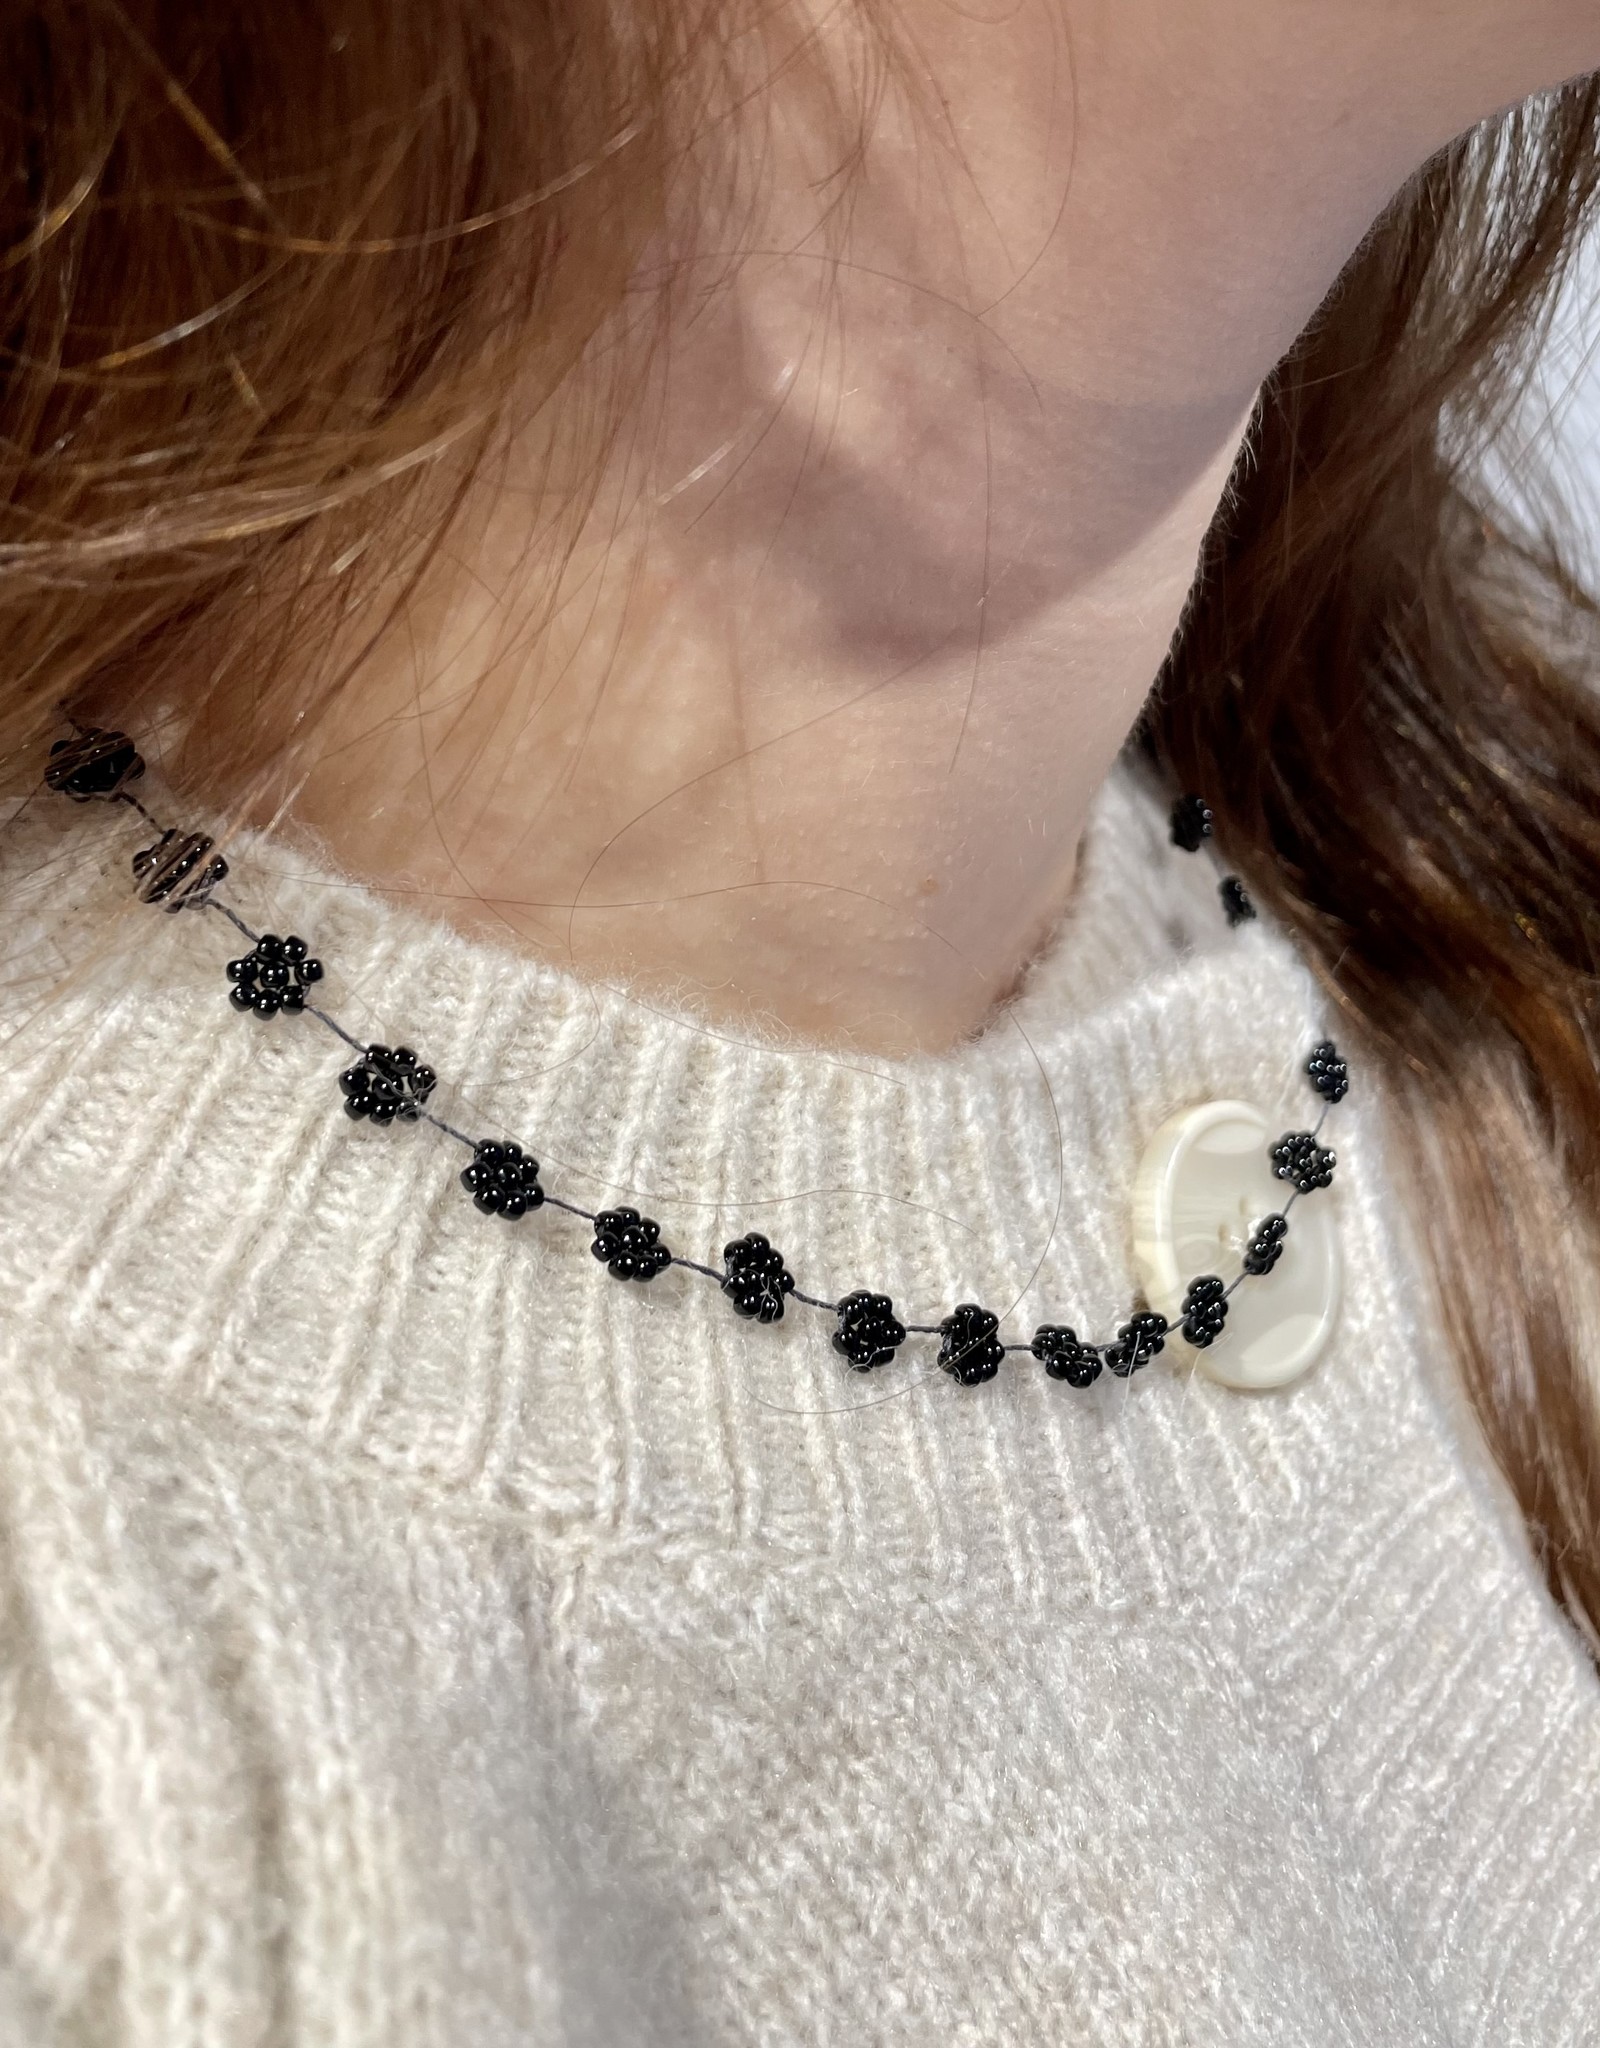 Atelier Labro Fiori Necklace All Black